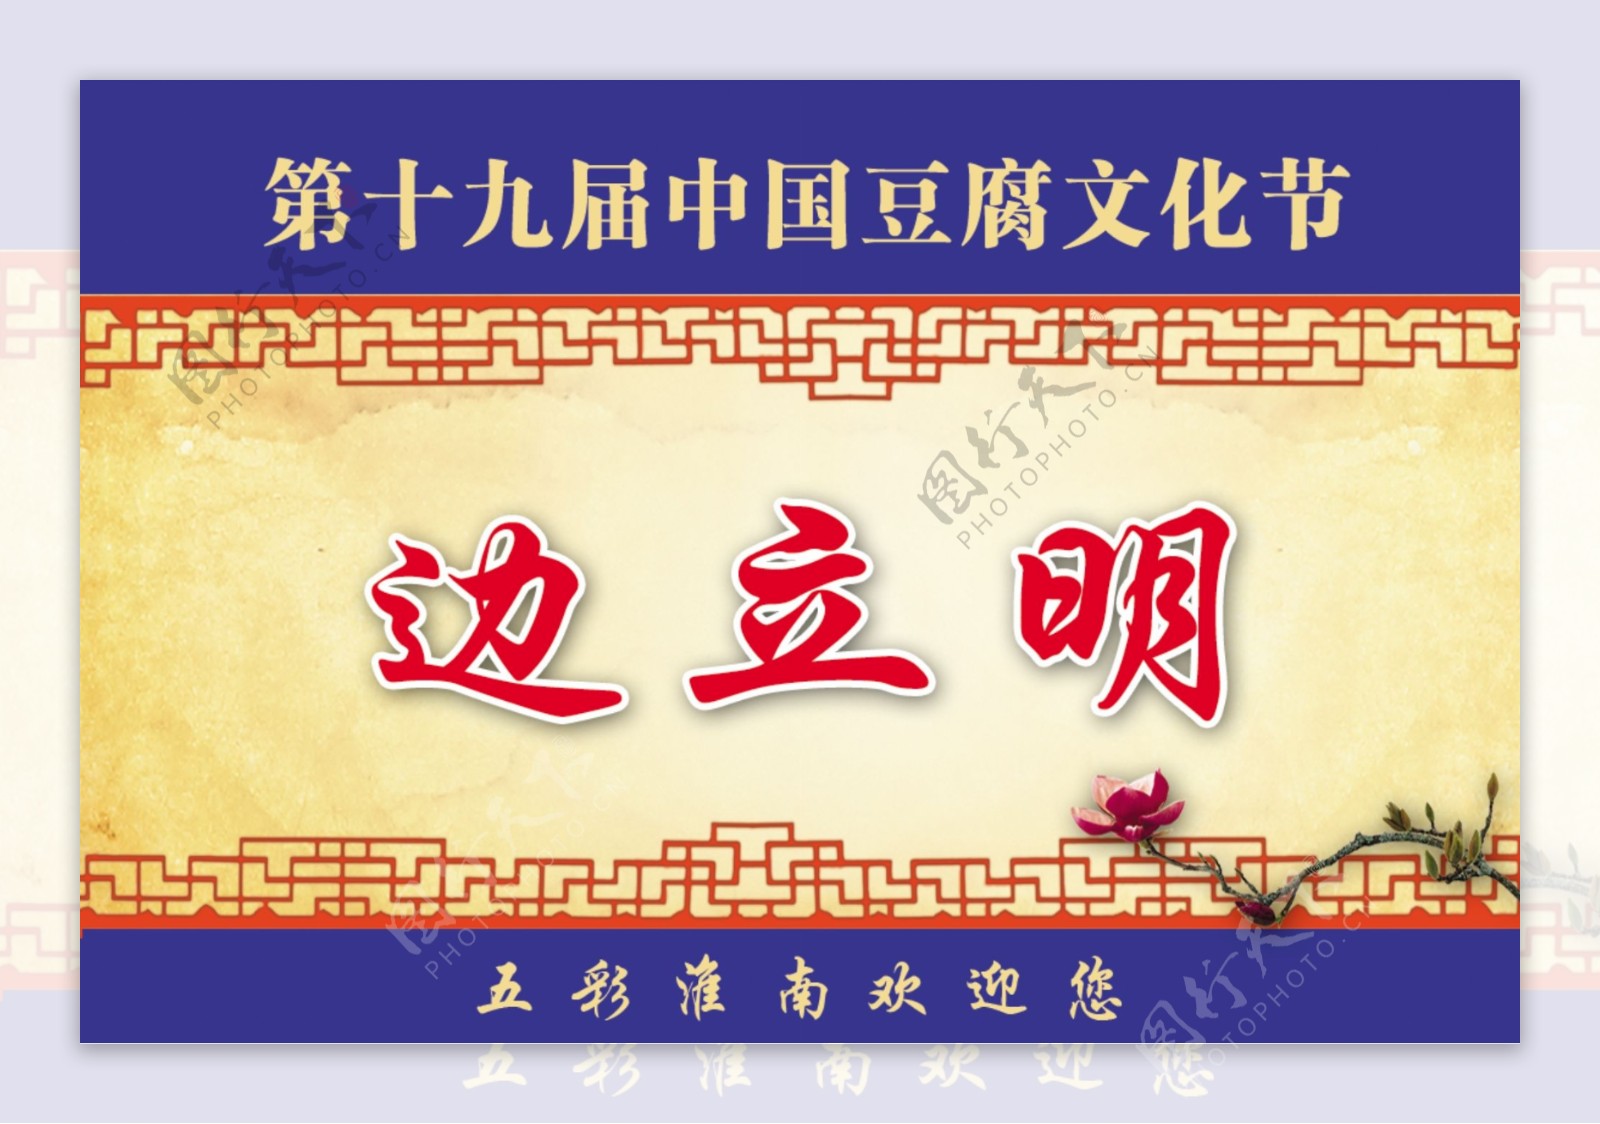 豆腐文化节席卡